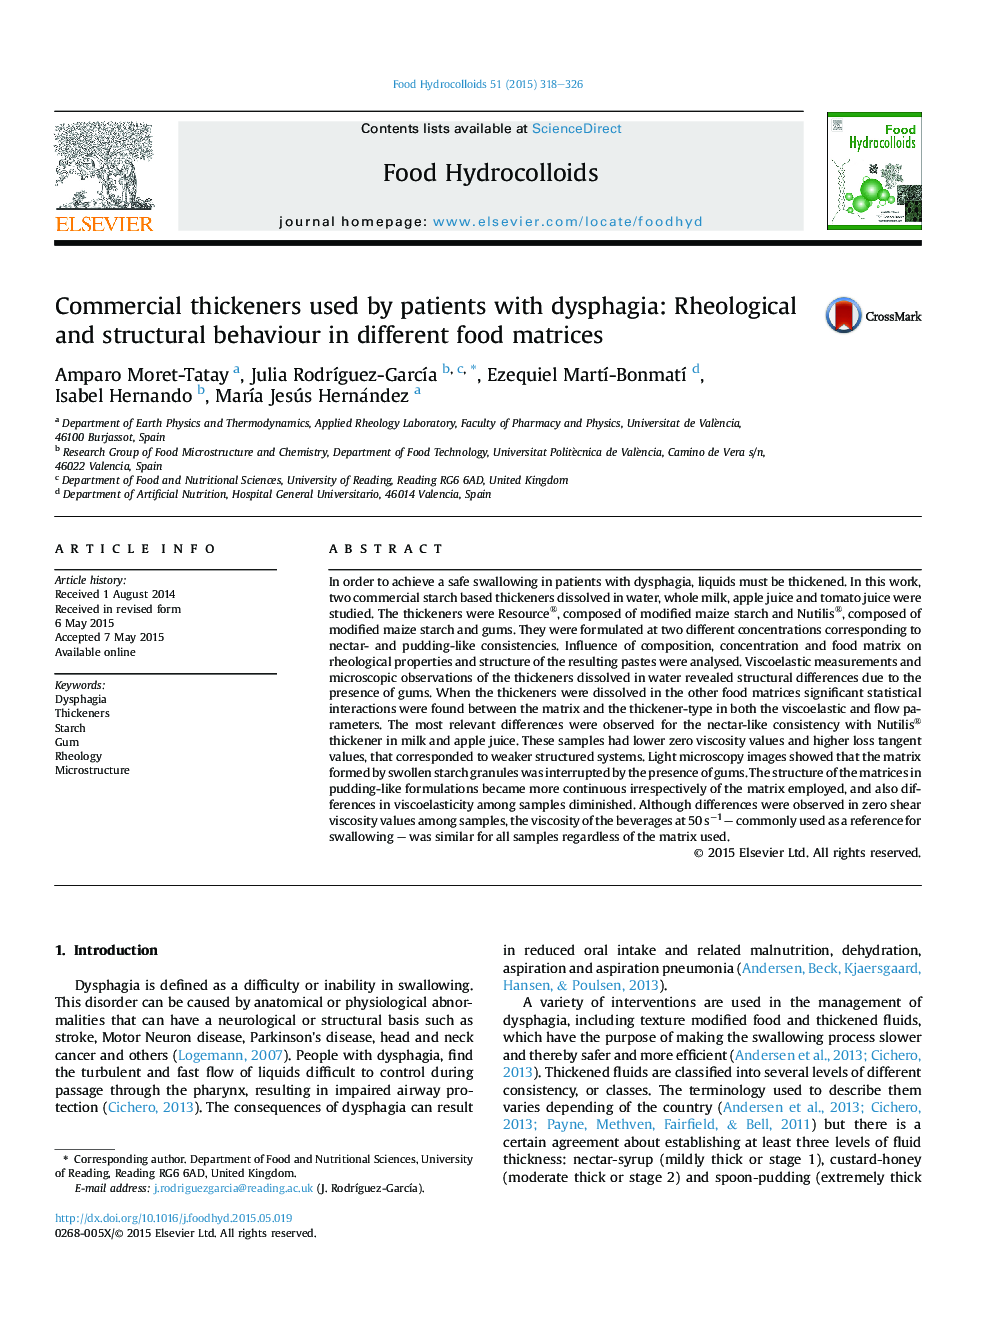 ضایعات تجاری استفاده شده توسط بیماران مبتلا به دیسفاژی: رفتار رئولوژیکی و ساختاری در ماتریس های غذایی مختلف 